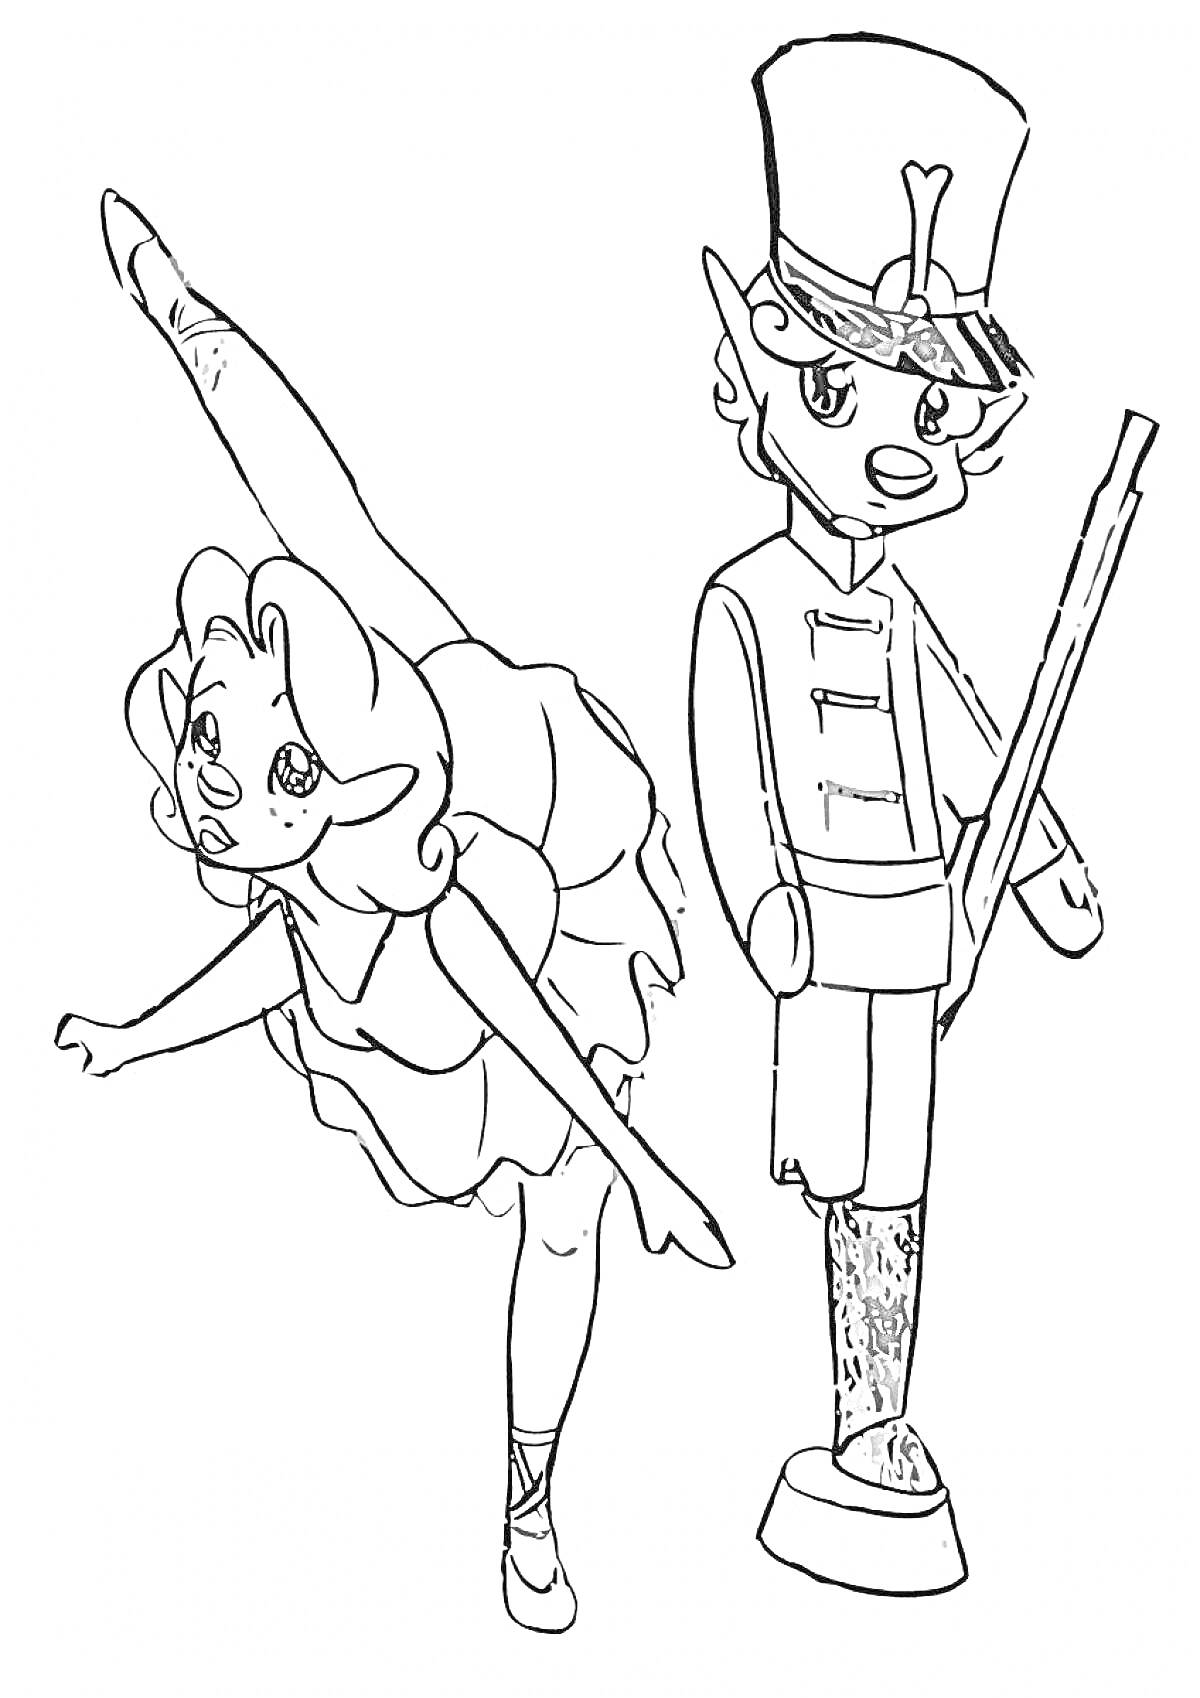 Балерина и оловянный солдатик с ружьем